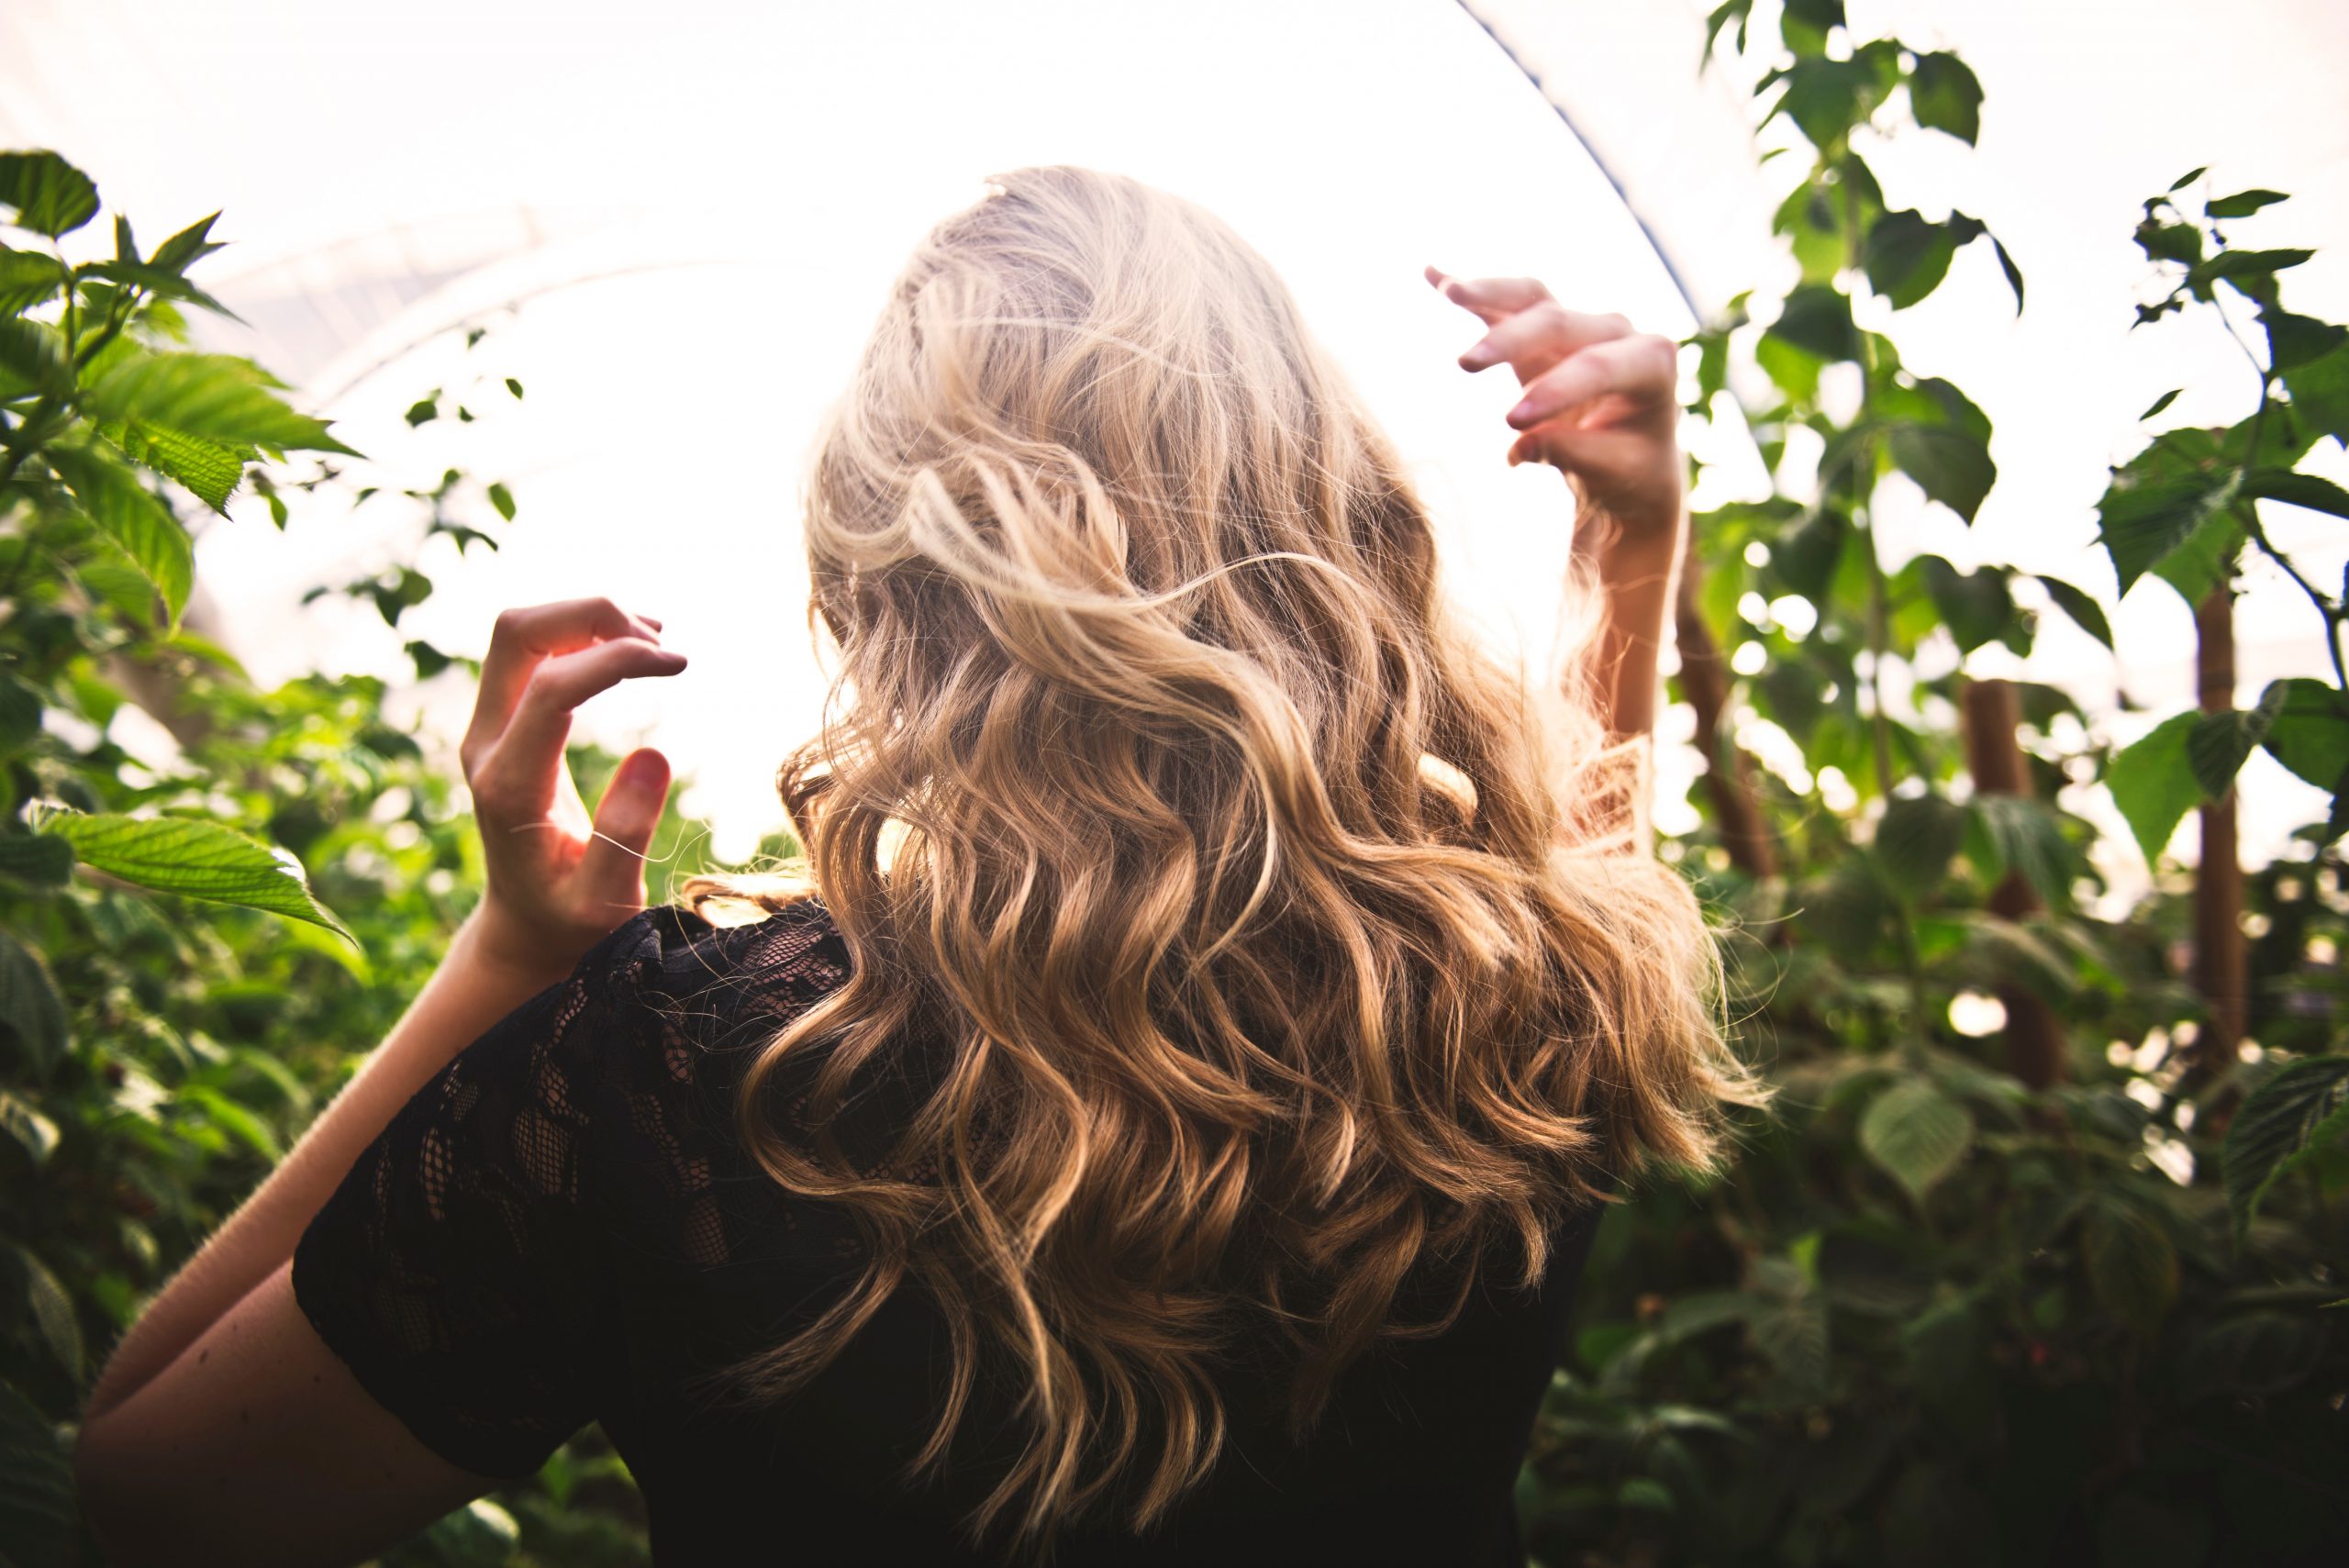 Chelatowanie włosów – jak to działa i co warto o tym wiedzieć?